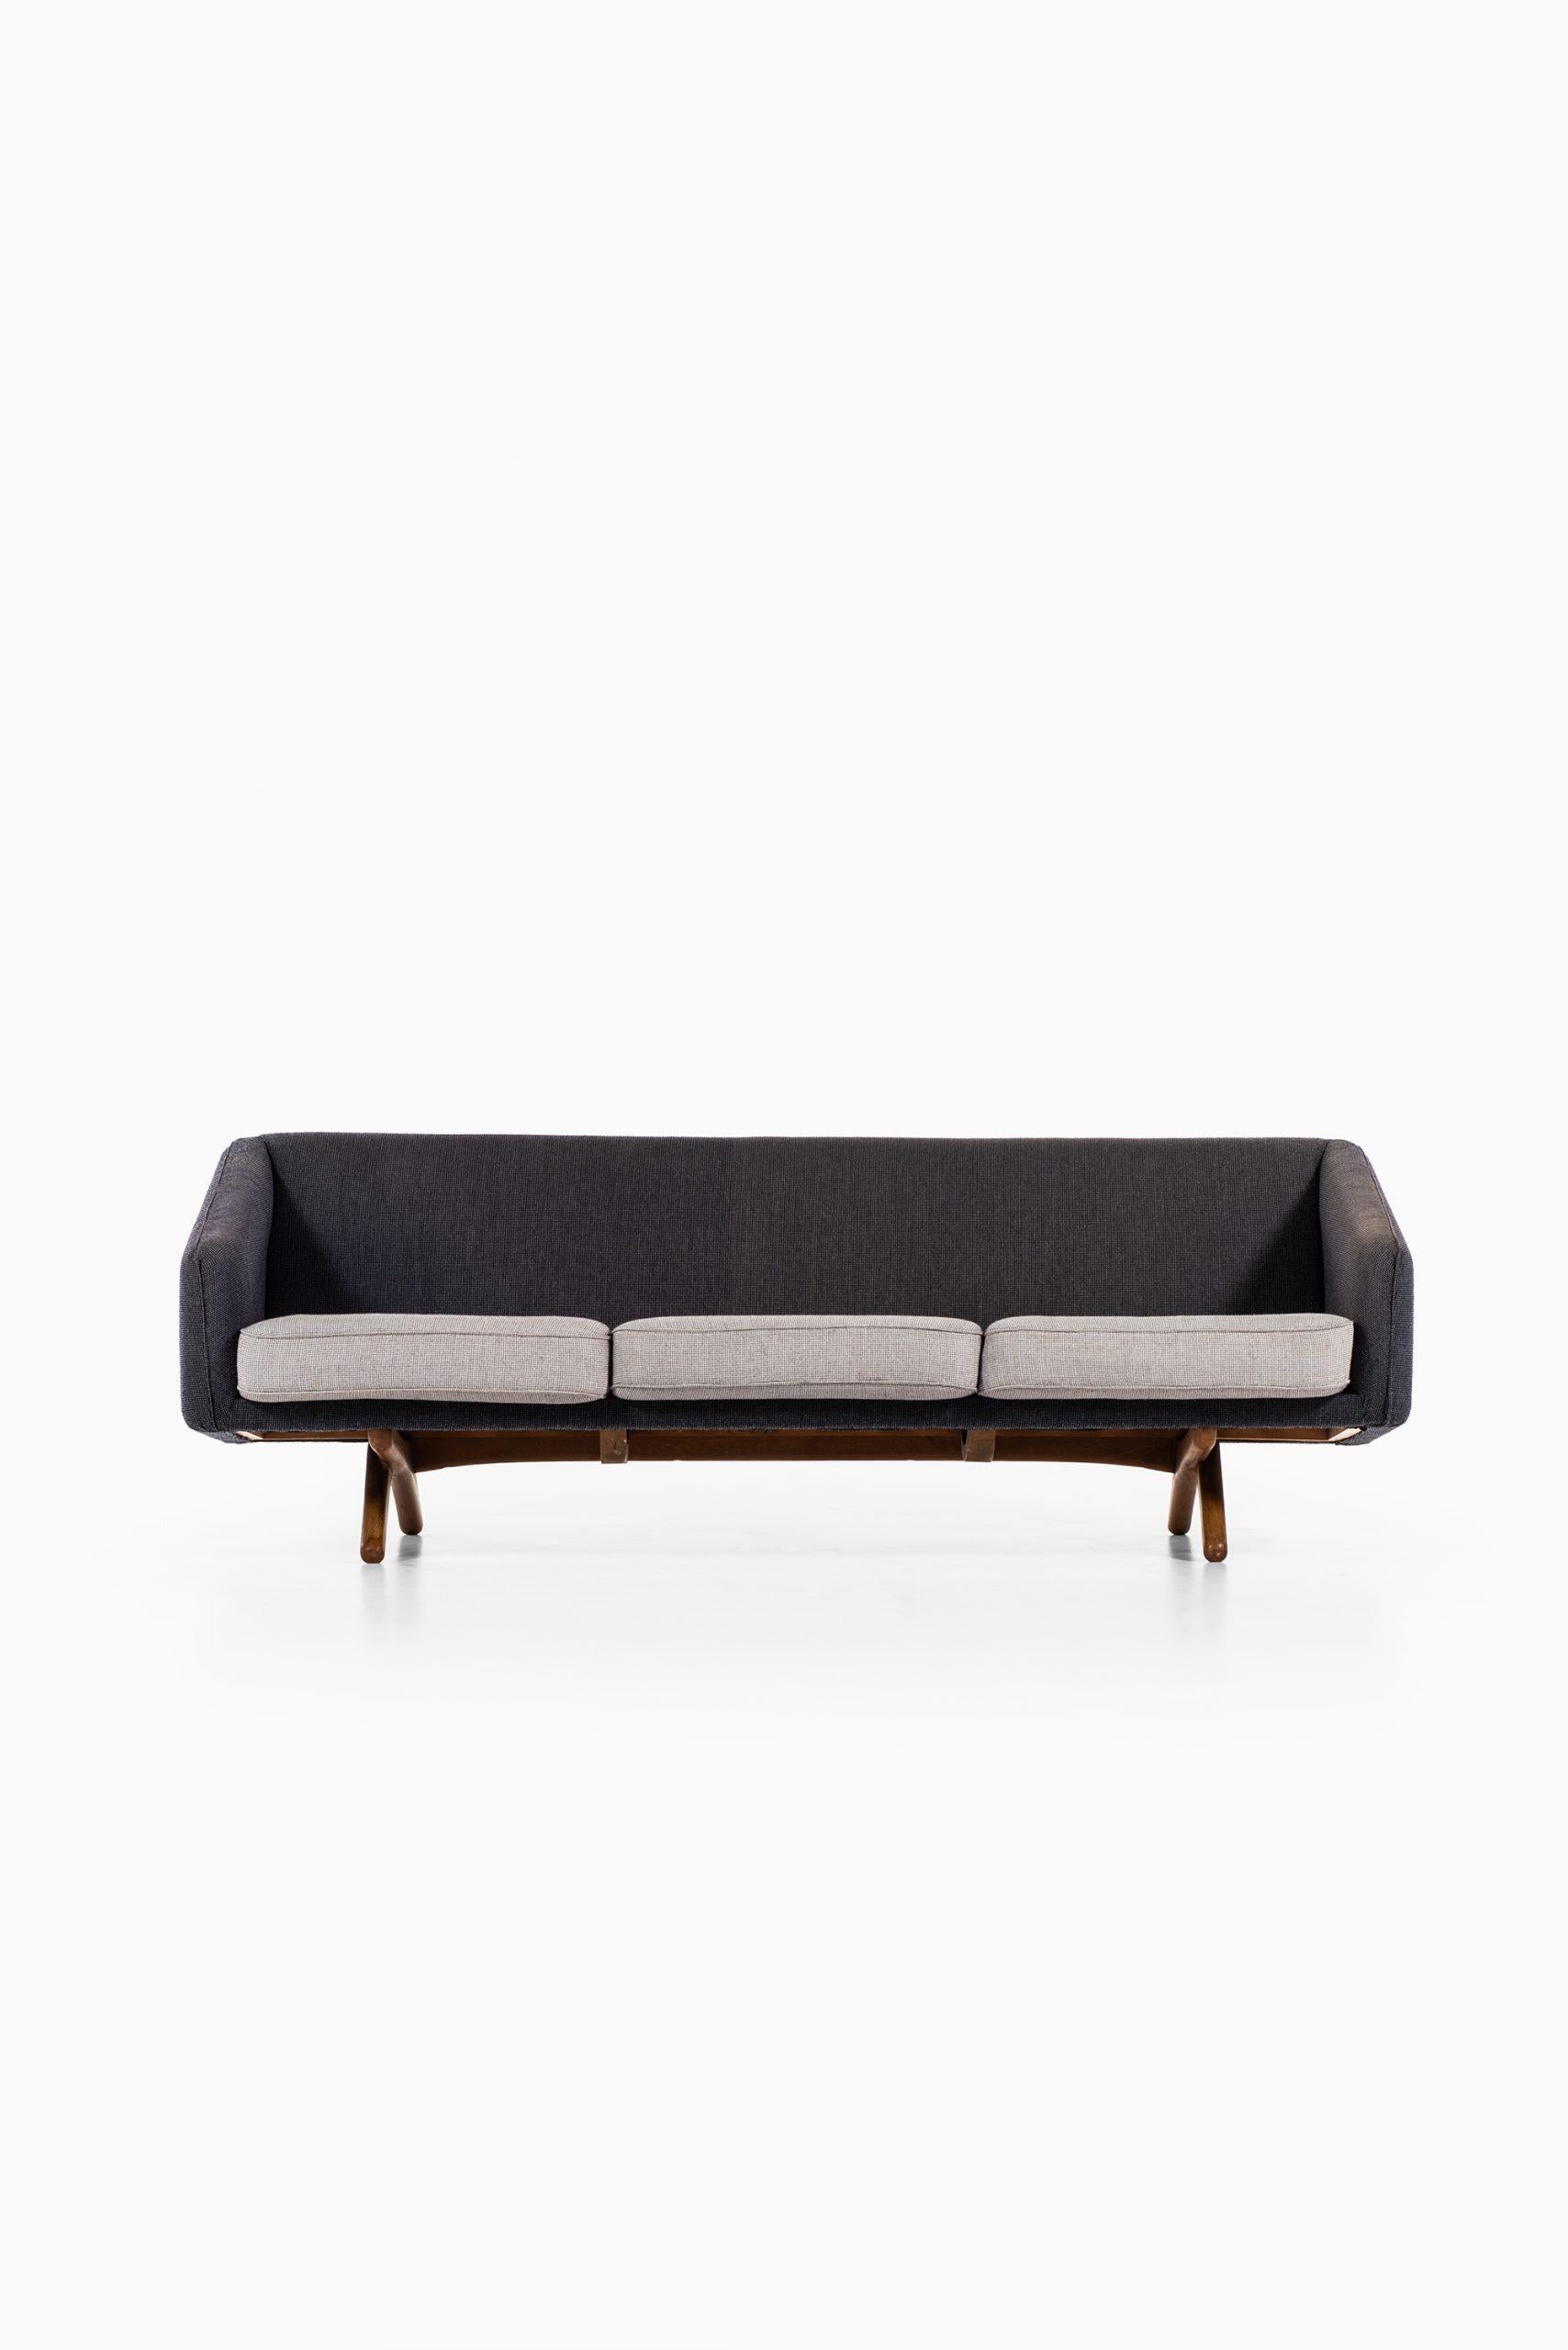 Rare sofa model ML-90 designed by Illum Wikkelsø. Produced by Michael Laursen in Denmark.